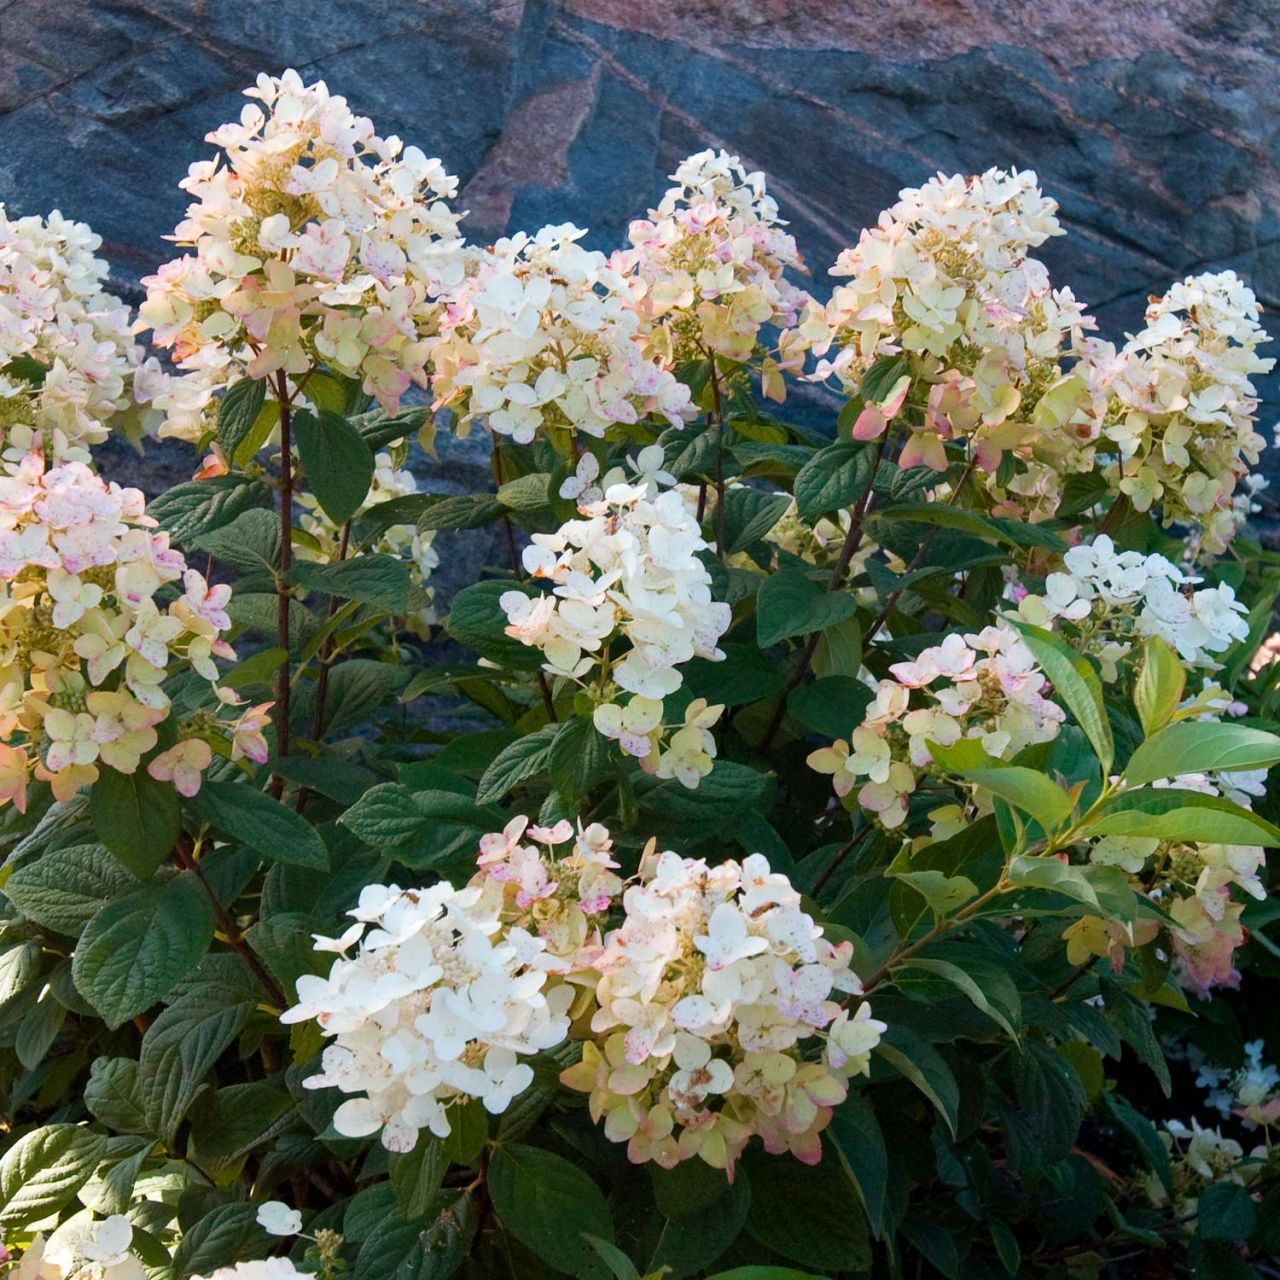 Kategorie <b>Blütensträucher und Ziergehölze </b> - Rispenhortensie 'Tickled Pink' - Hydrangea paniculata 'Tickled Pink'